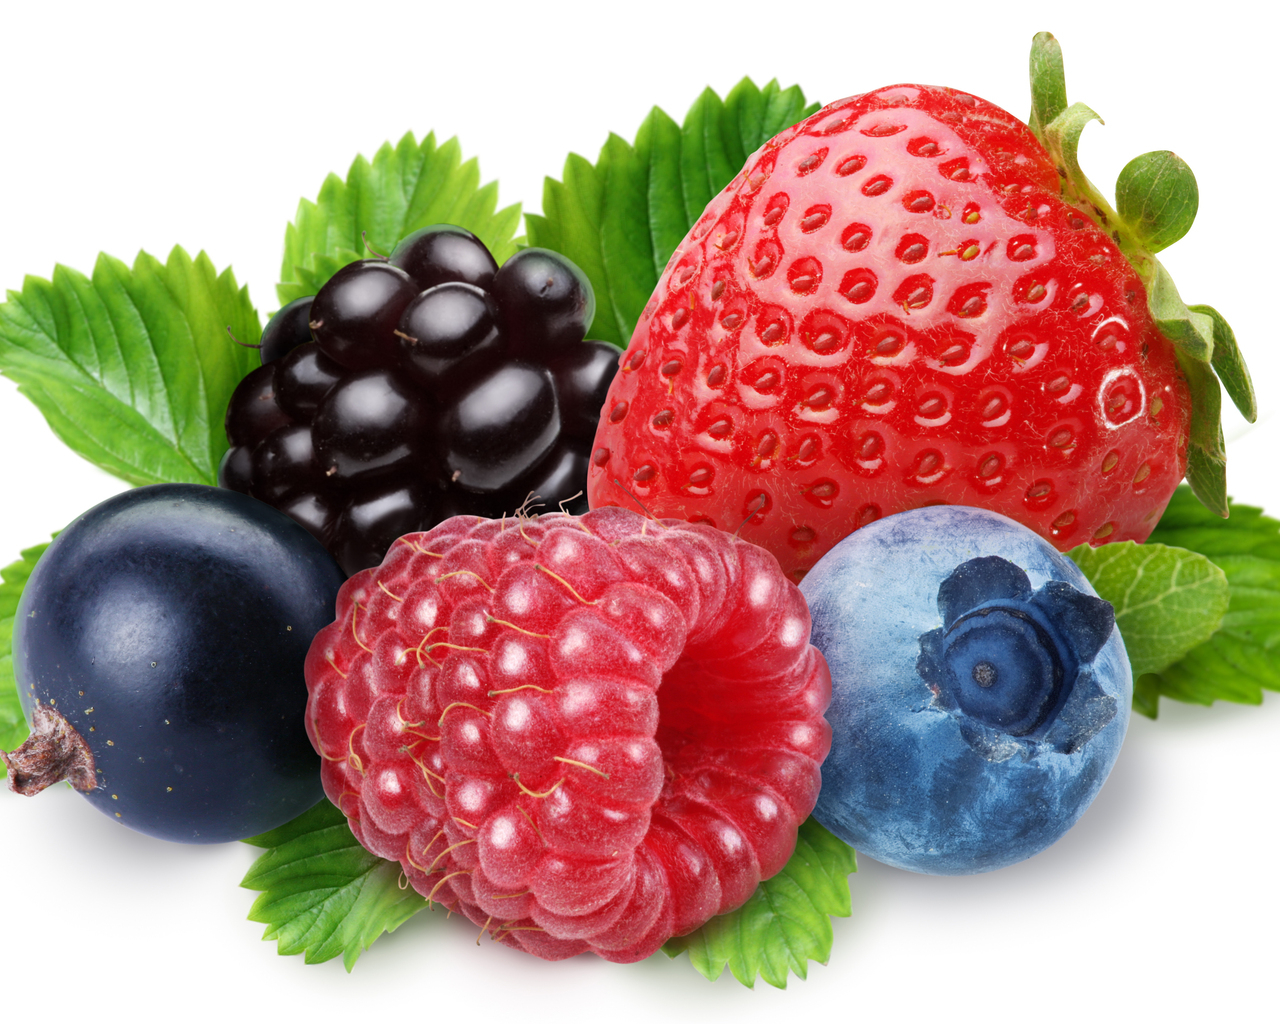 juicy berries